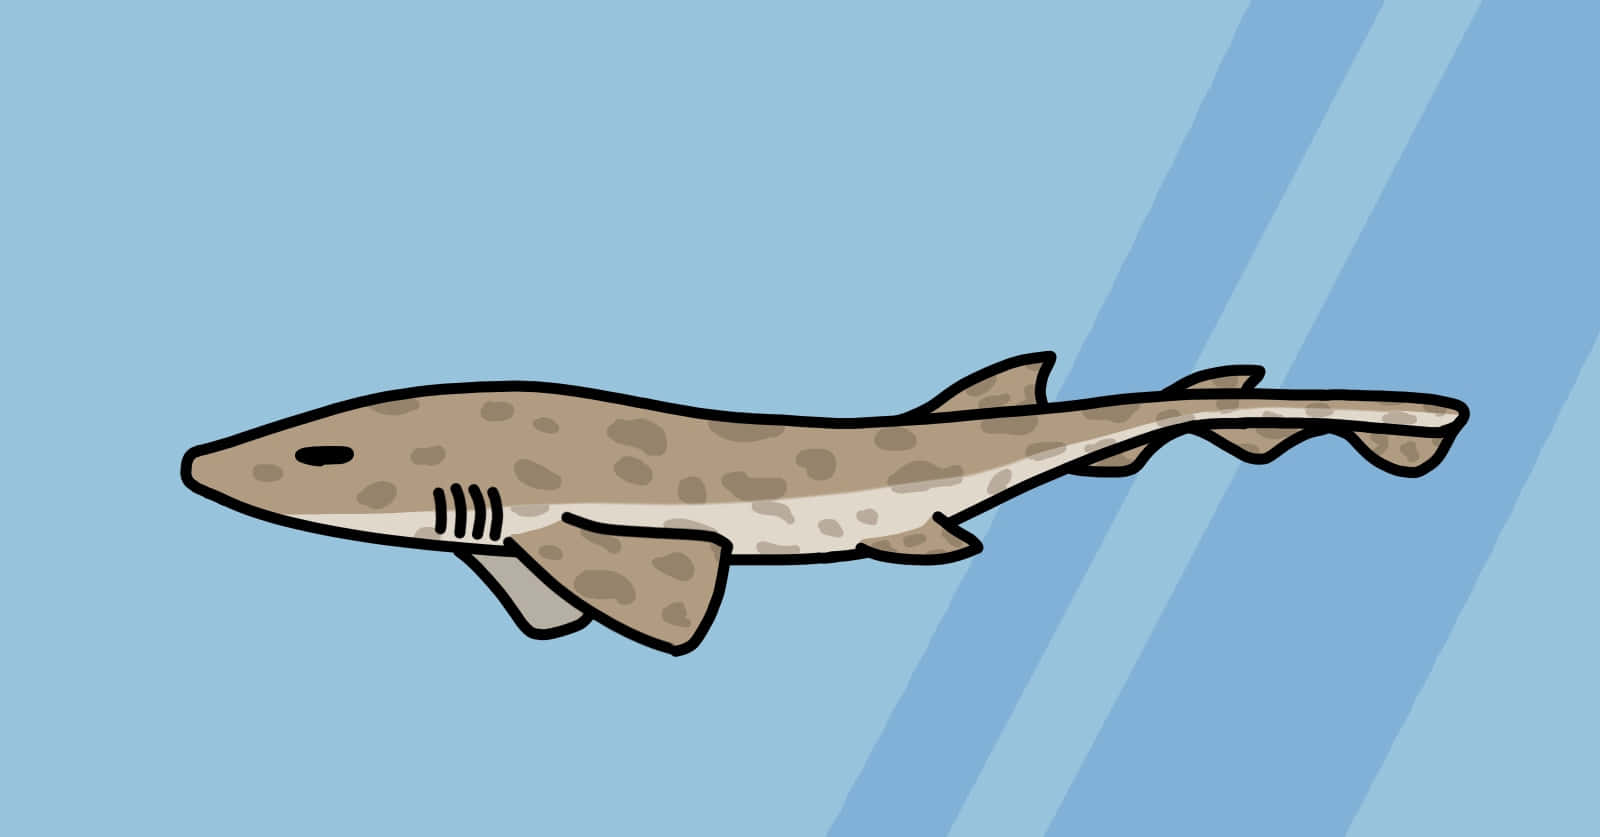 Cartoon Cat Shark Illustration Wallpaper